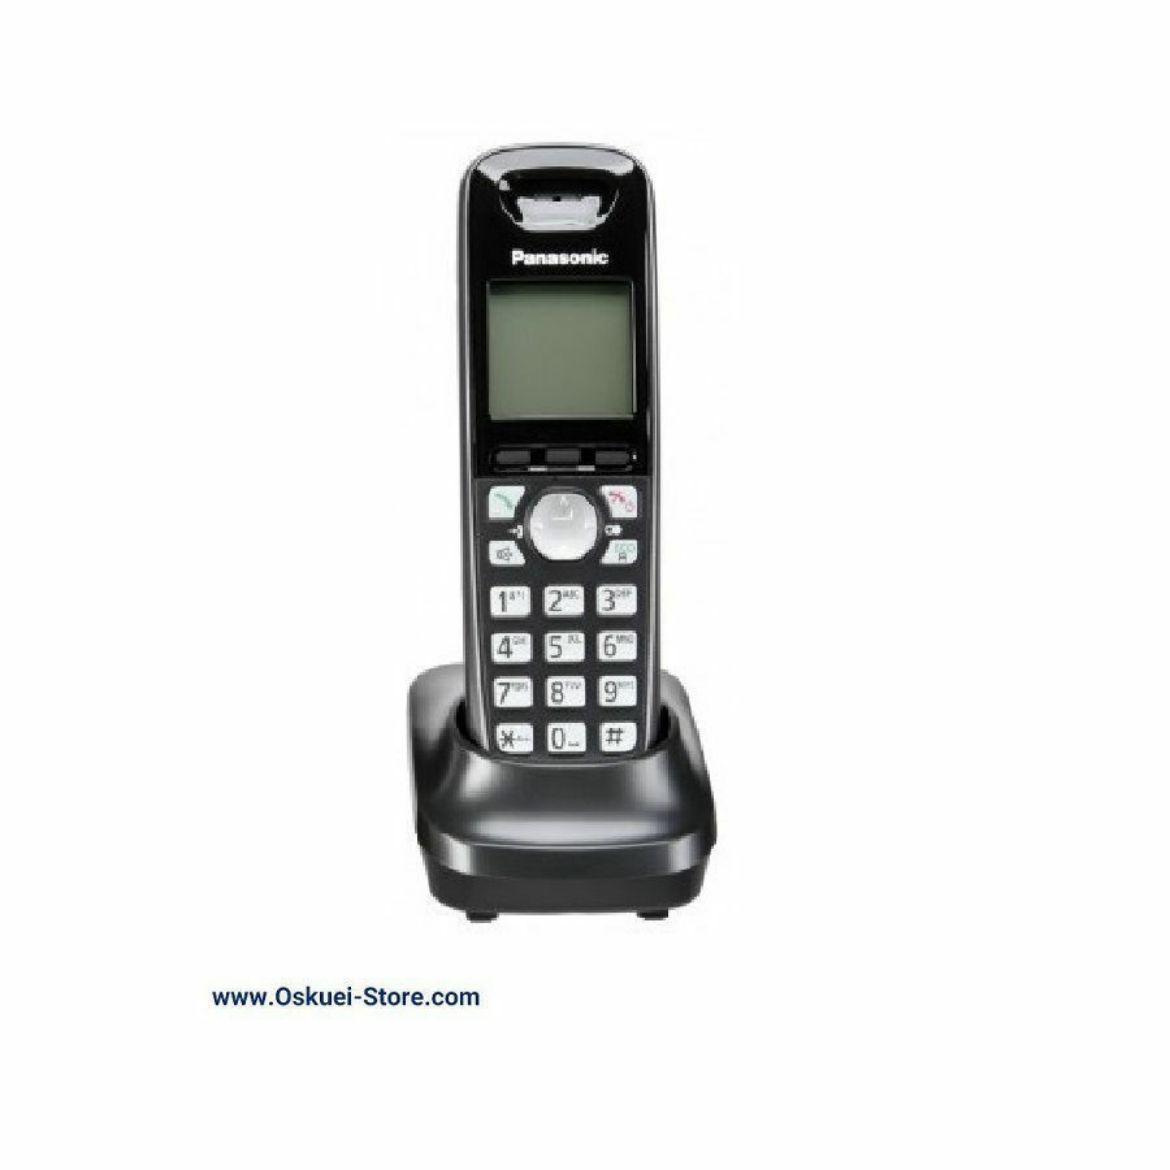 Panasonic KX-TGA651 Cordless Telephone Black Front